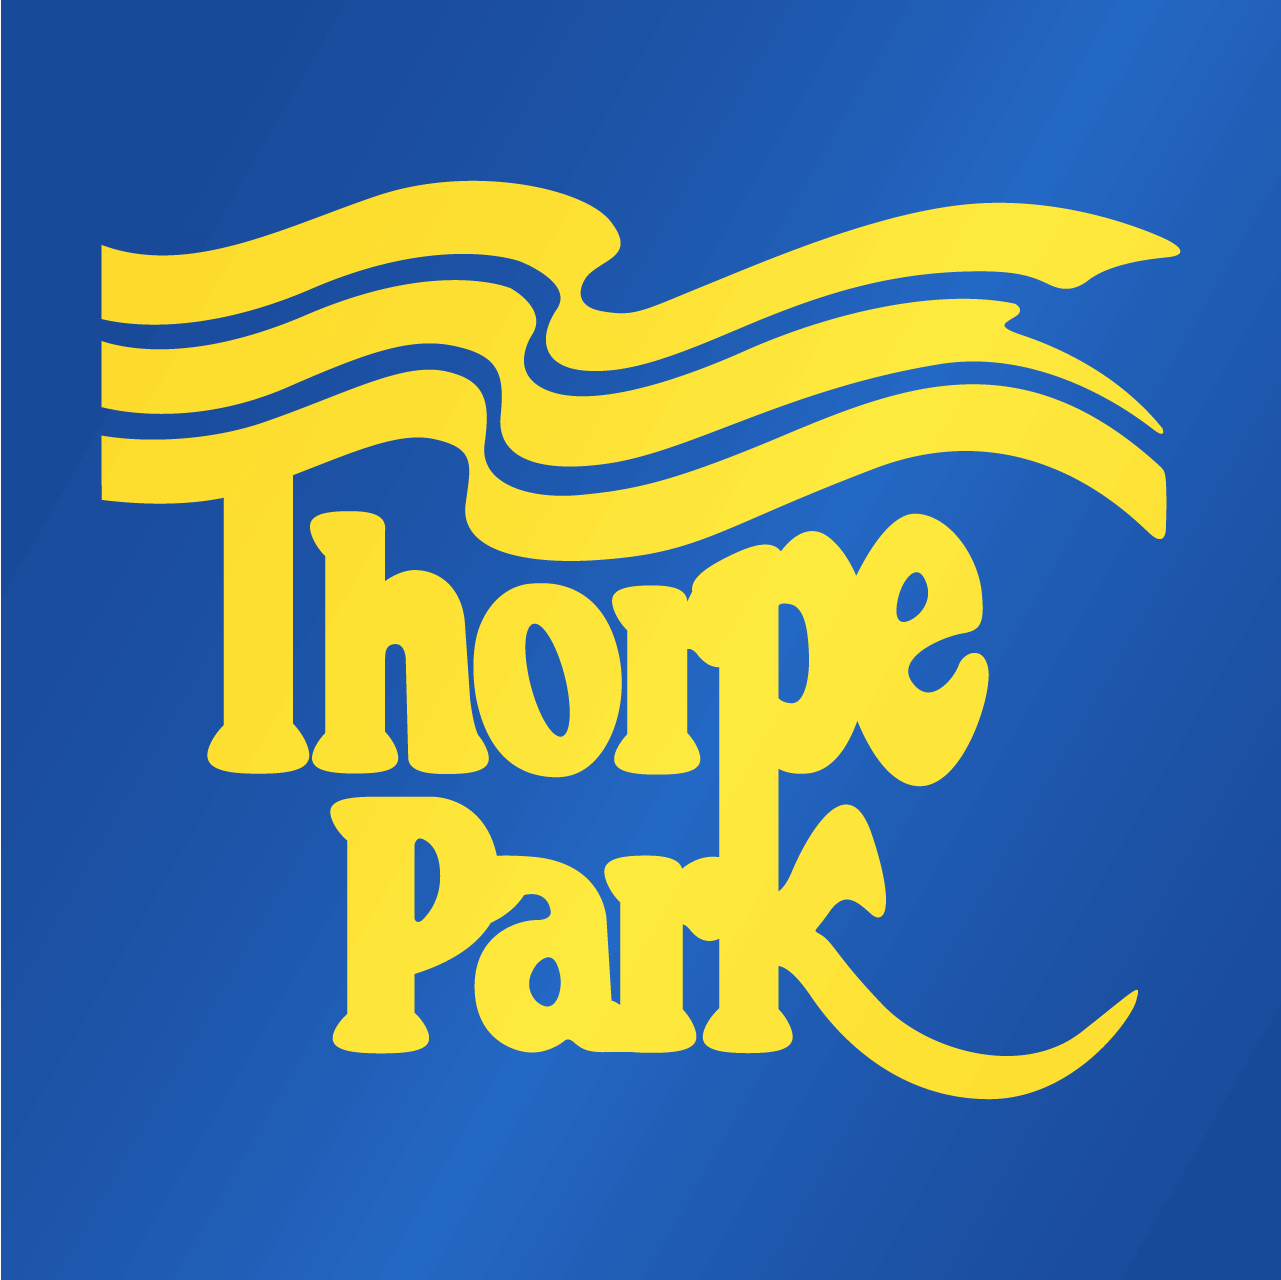 Thorpe Park Heritage